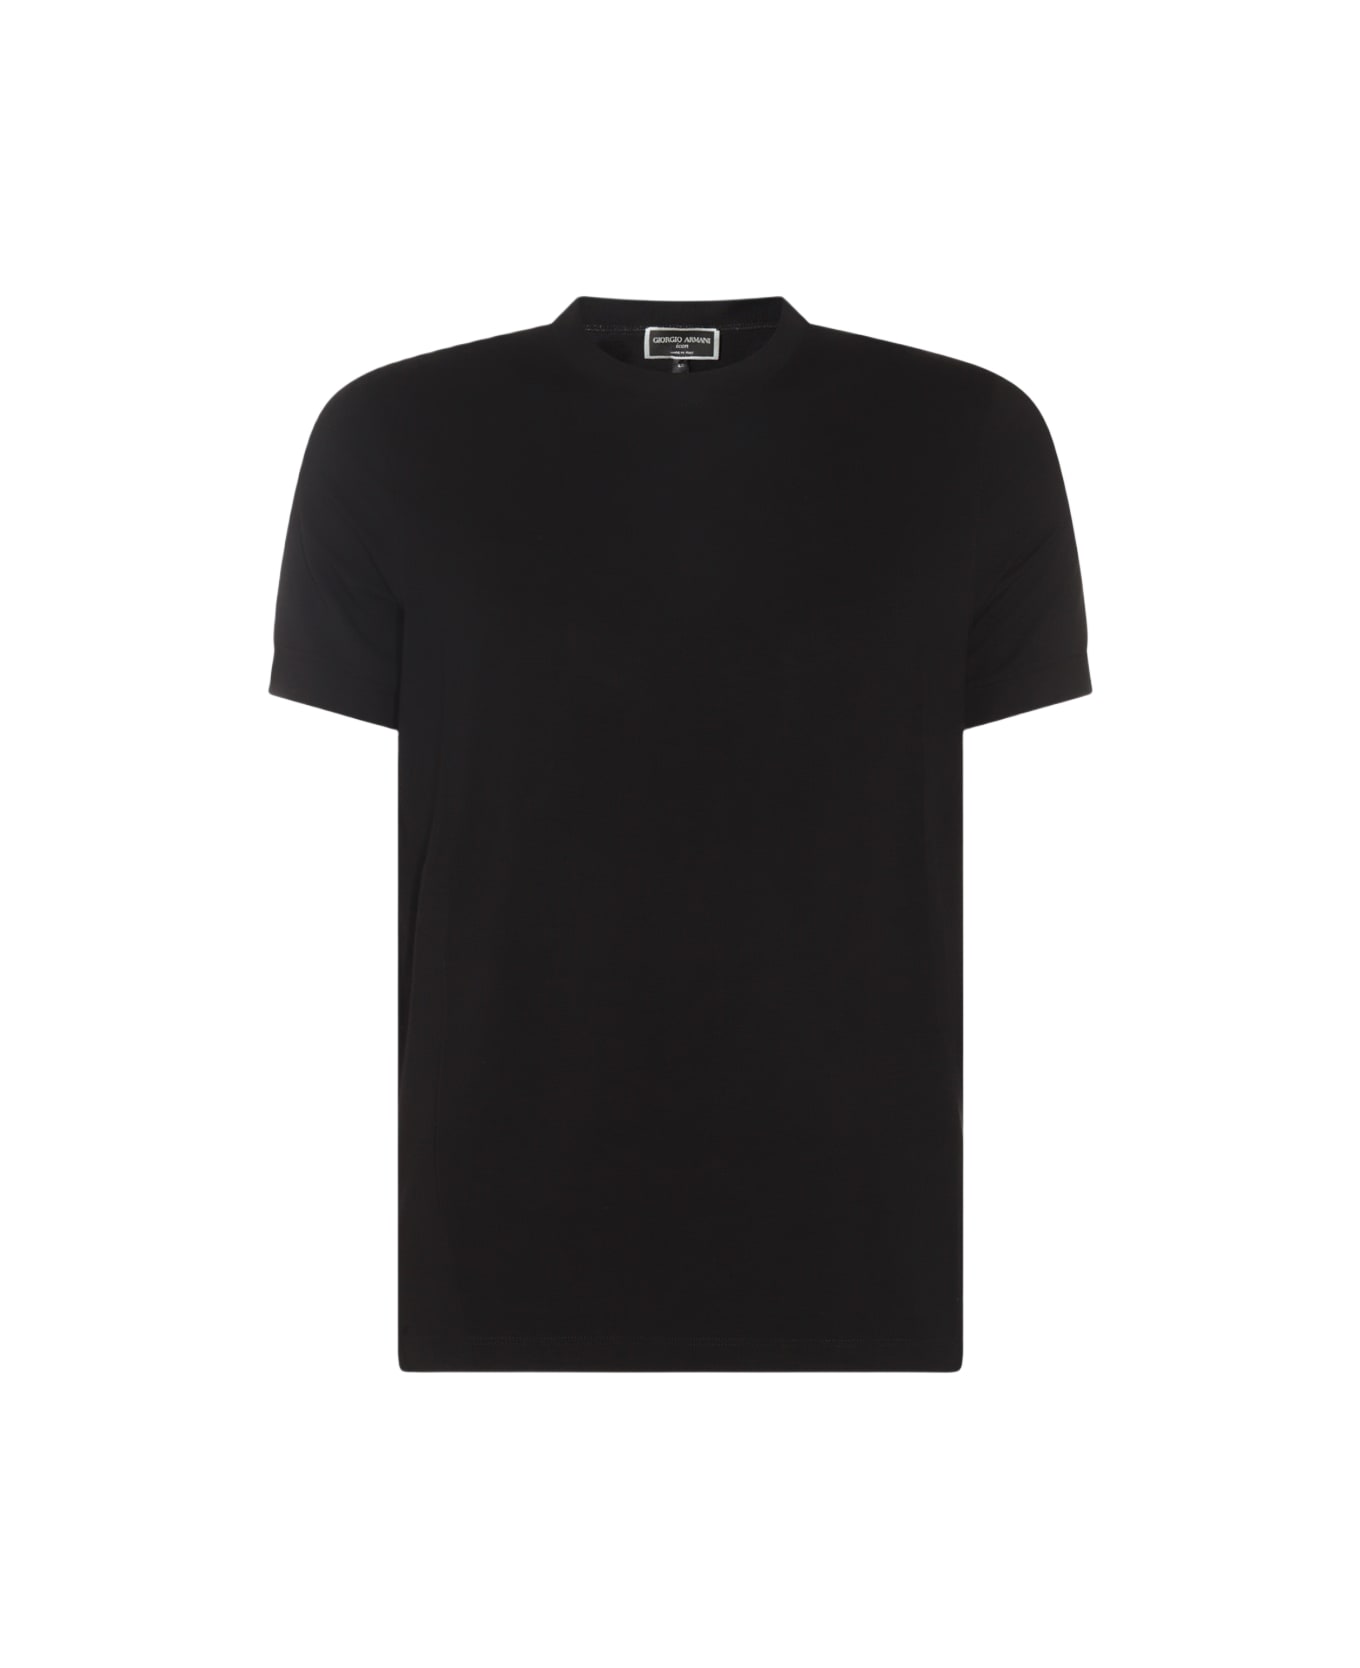 Giorgio Armani Black Viscose T-shirt - Black シャツ